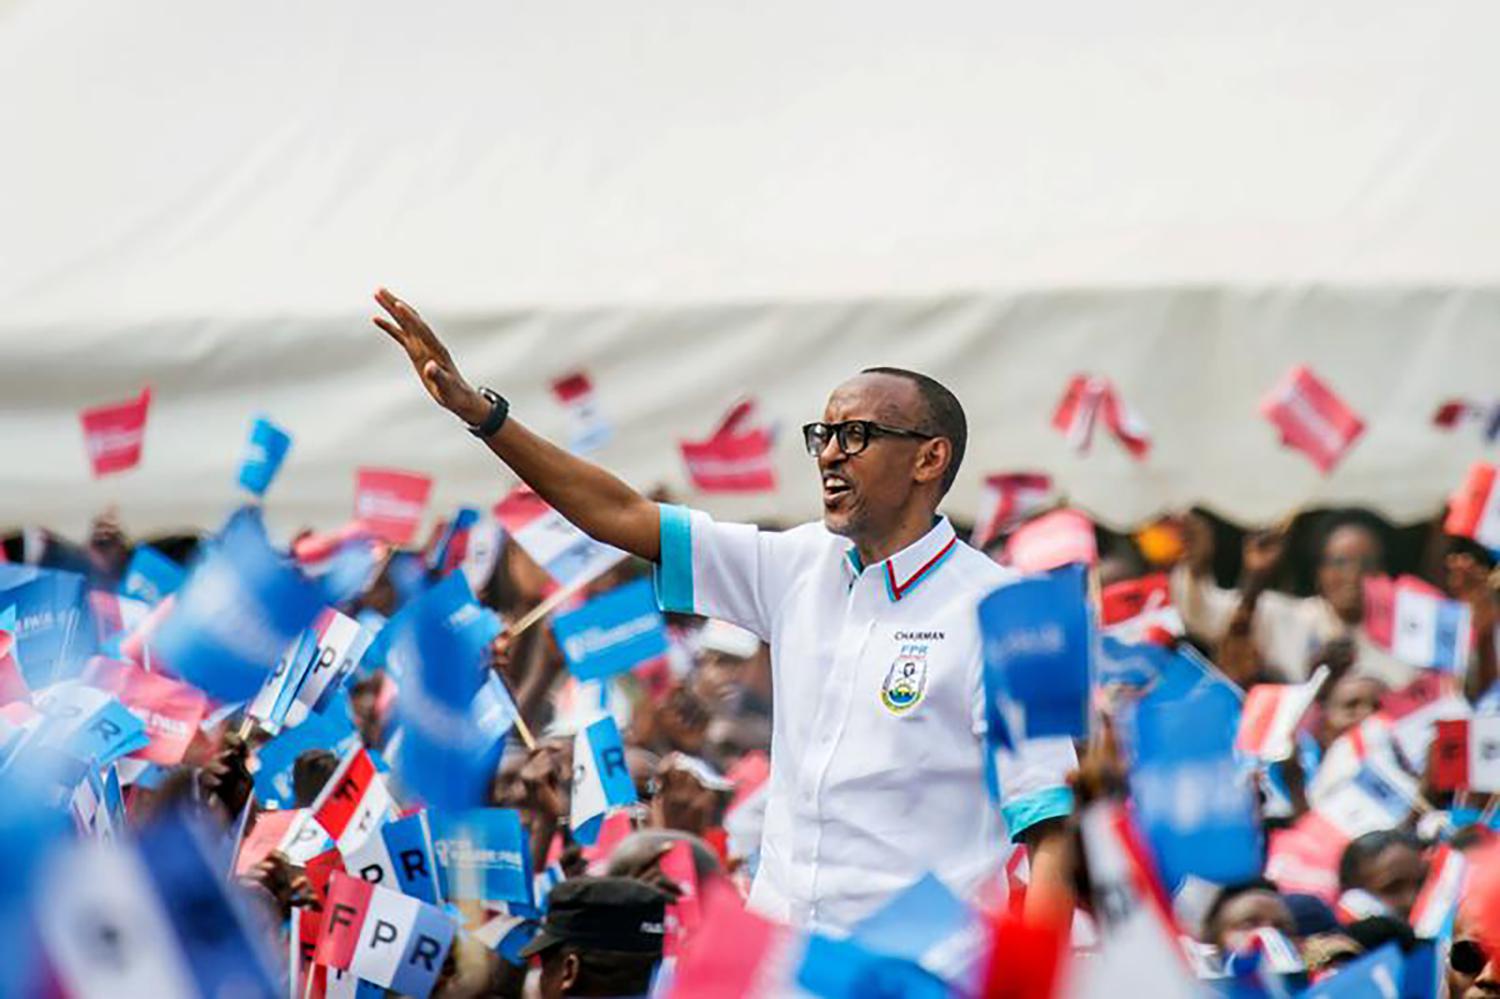 Le président rwandais Paul Kagame du Front patriotique rwandais (FPR) au pouvoir salue ses partisans lors d’un rassemblement à Nyanza, au Rwanda, le 14 juillet 2017.